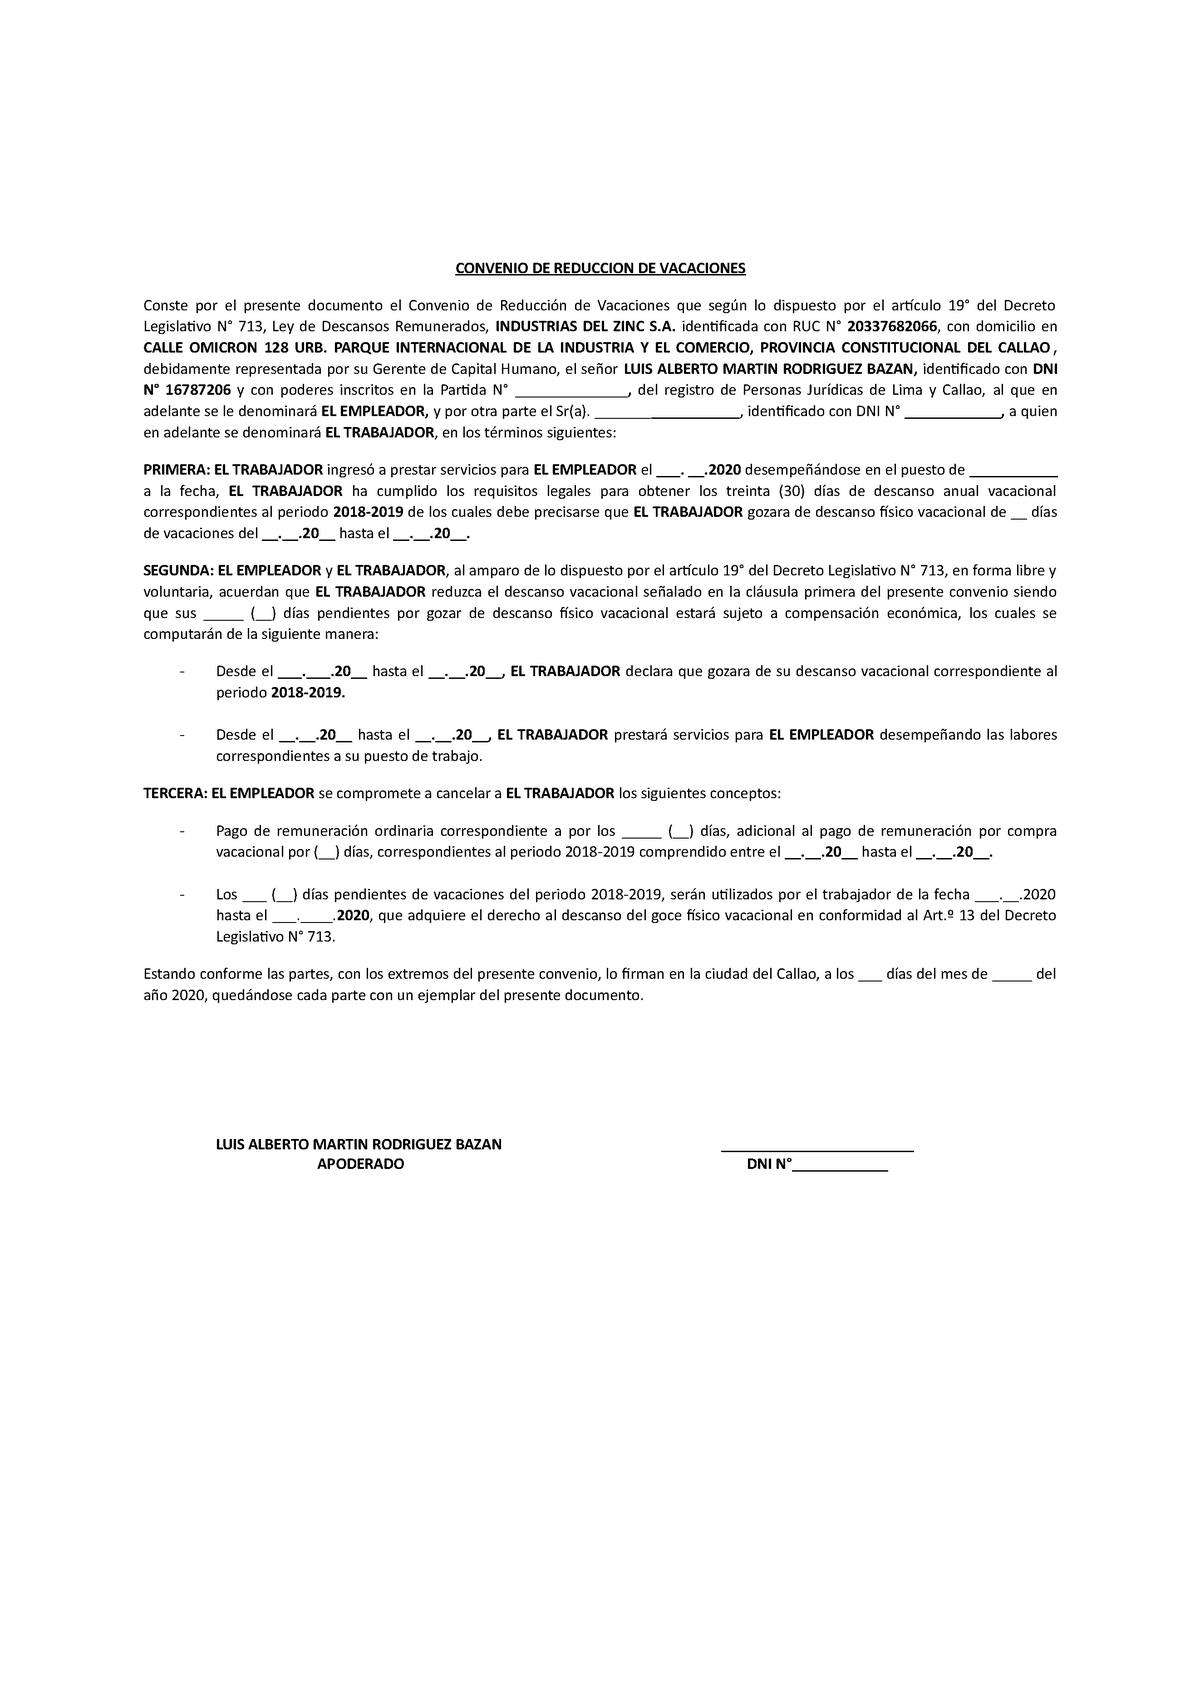 Convenio DE Reduccion DE Vacaciones - Modelo - CONVENIO DE REDUCCION DE  VACACIONES Conste por el - Studocu